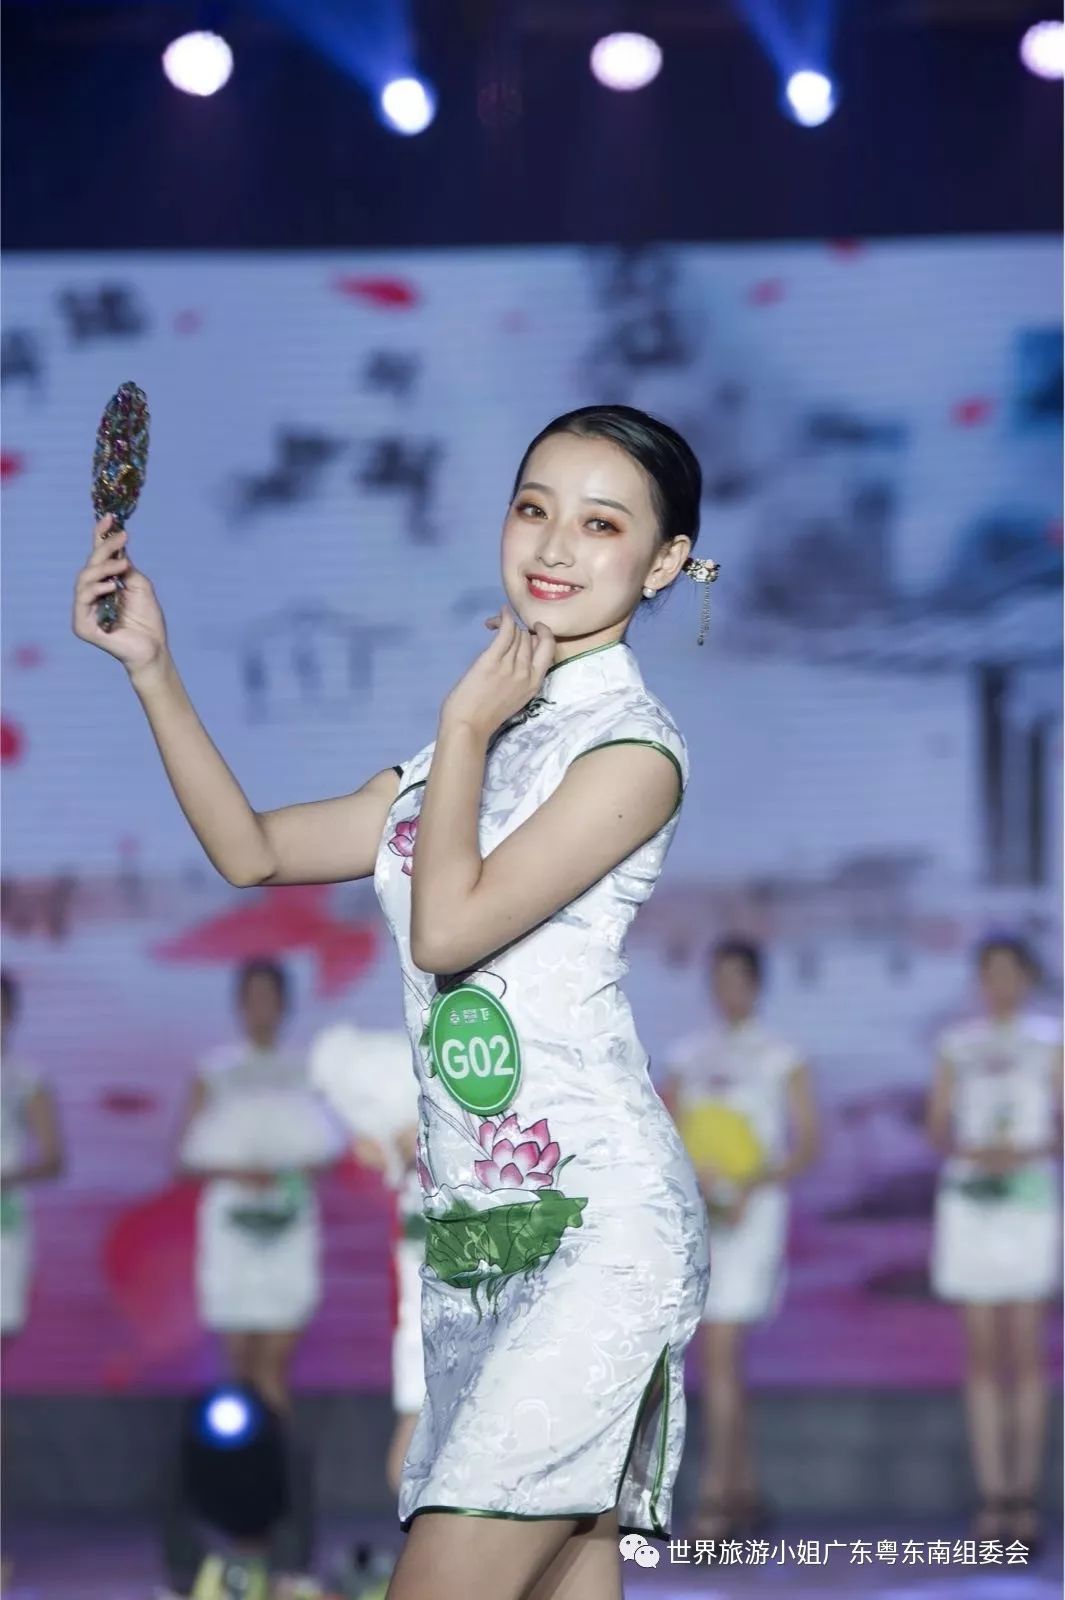 2019世界旅游小姐中国年度冠军总决赛 潮汕女孩成功获奖